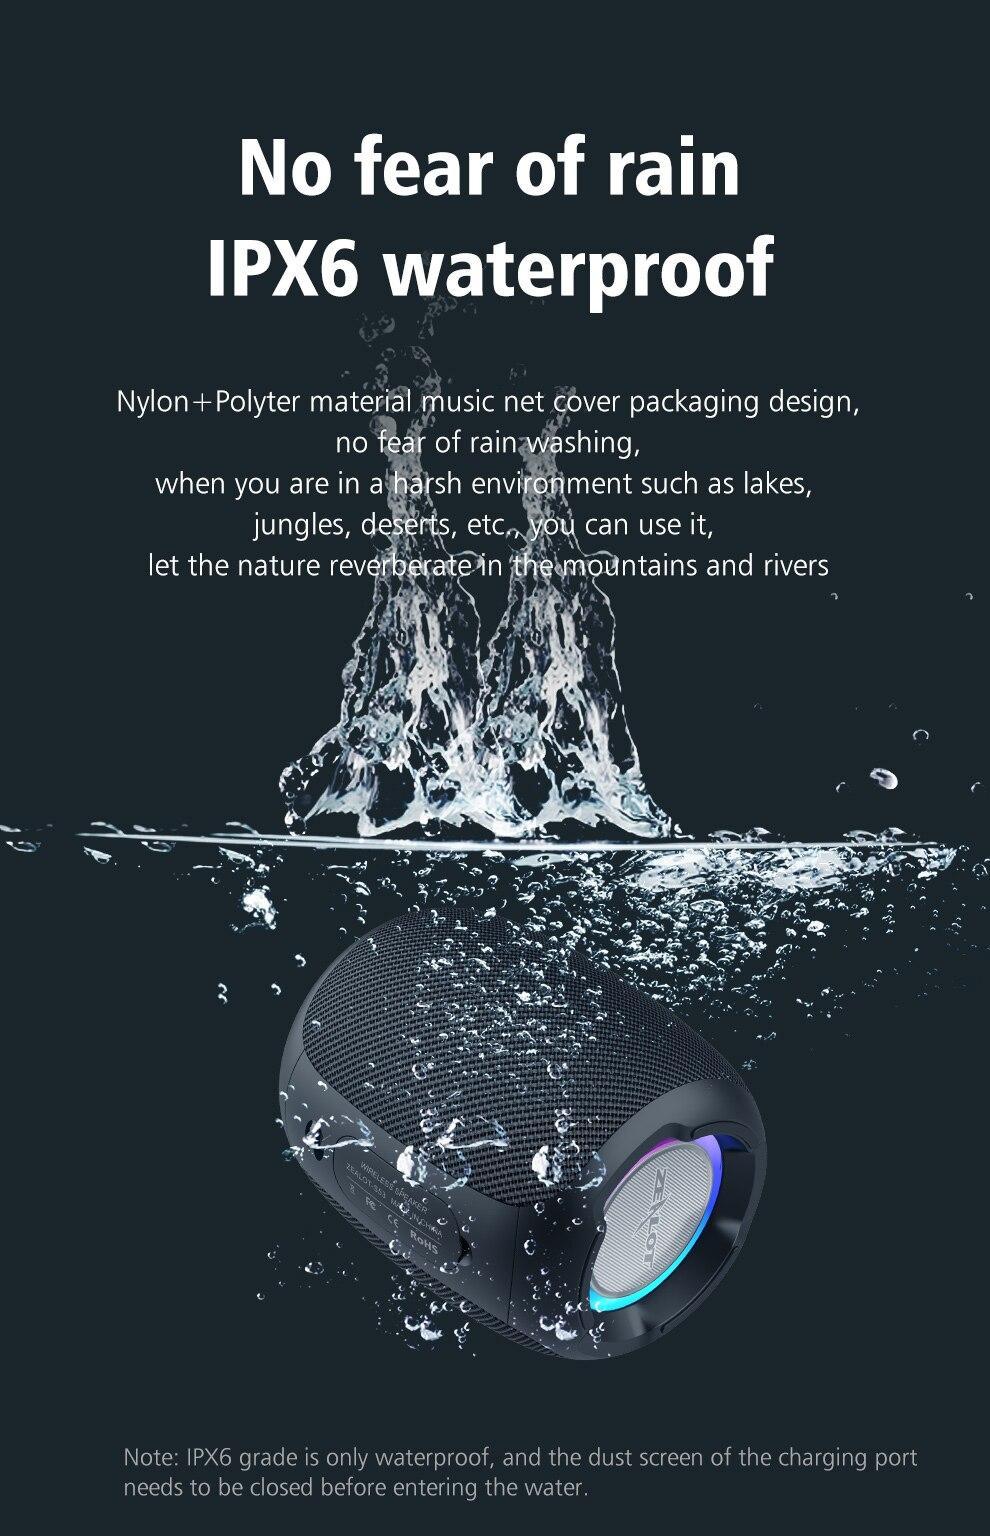 Zealot S53 Portable Wireless Speaker Bluetooth Column Waterproof 12 hours 20w super loud sound FM Speaker for phone TF card